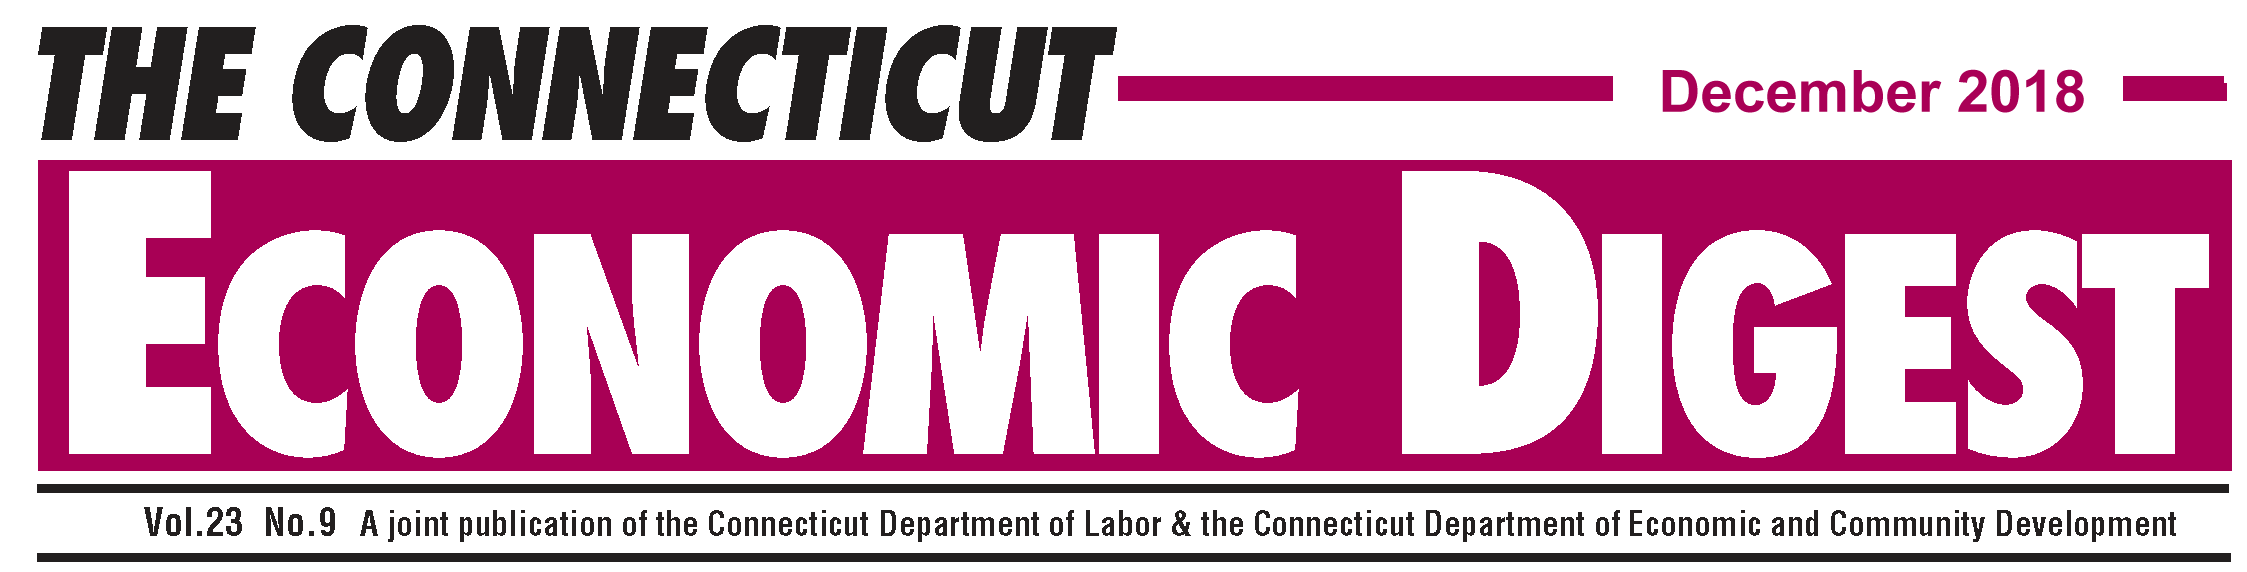 December 2018 Connecticut Economic Digest